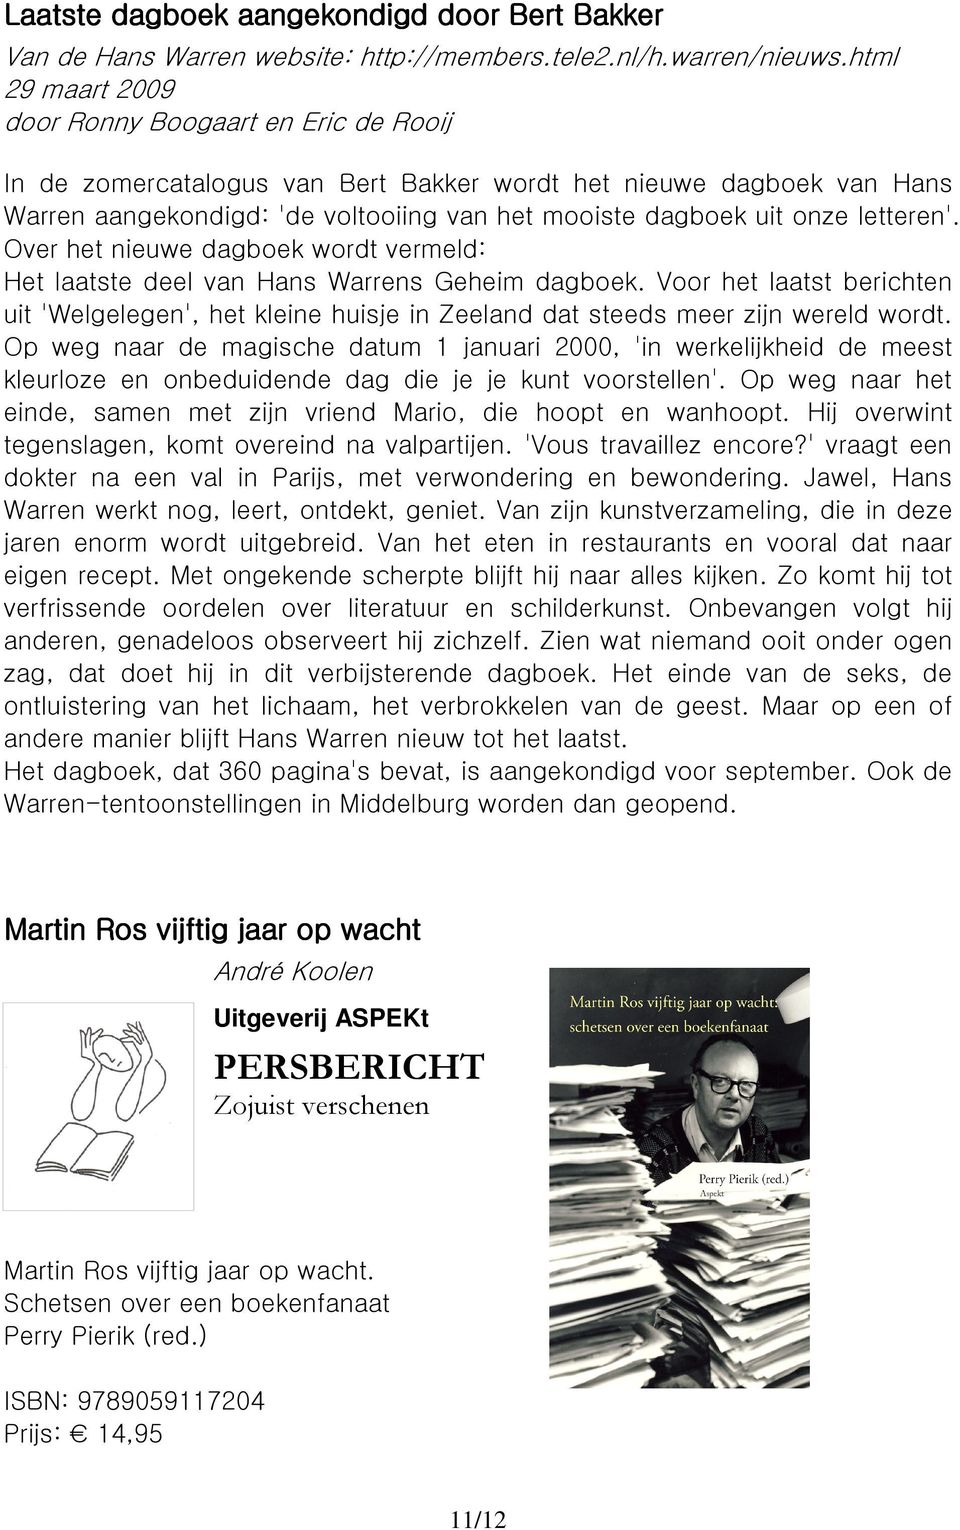 letteren'. Over het nieuwe dagboek wordt vermeld: Het laatste deel van Hans Warrens Geheim dagboek.